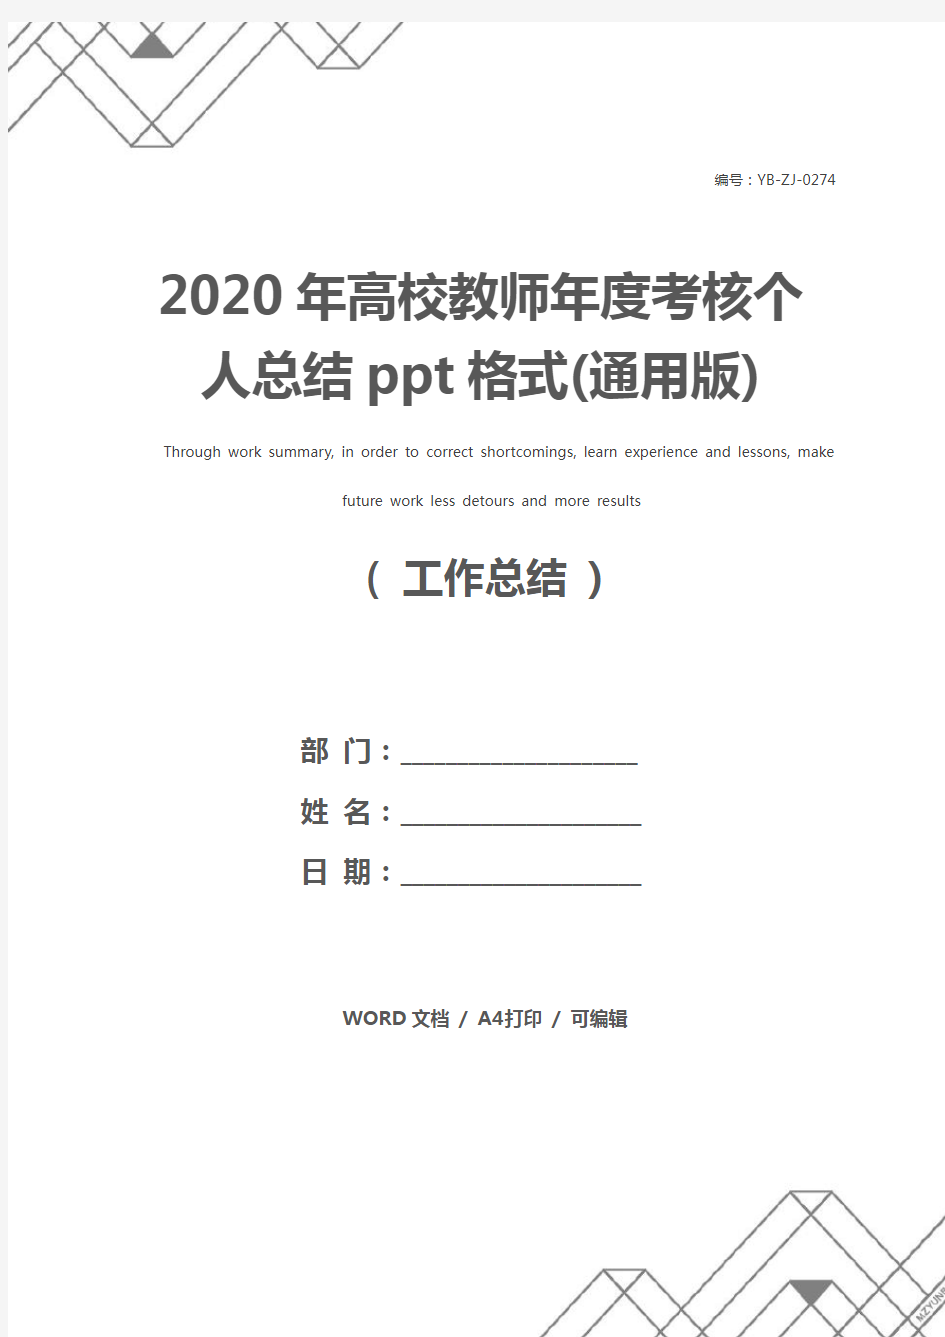 2020年高校教师年度考核个人总结ppt格式(通用版)